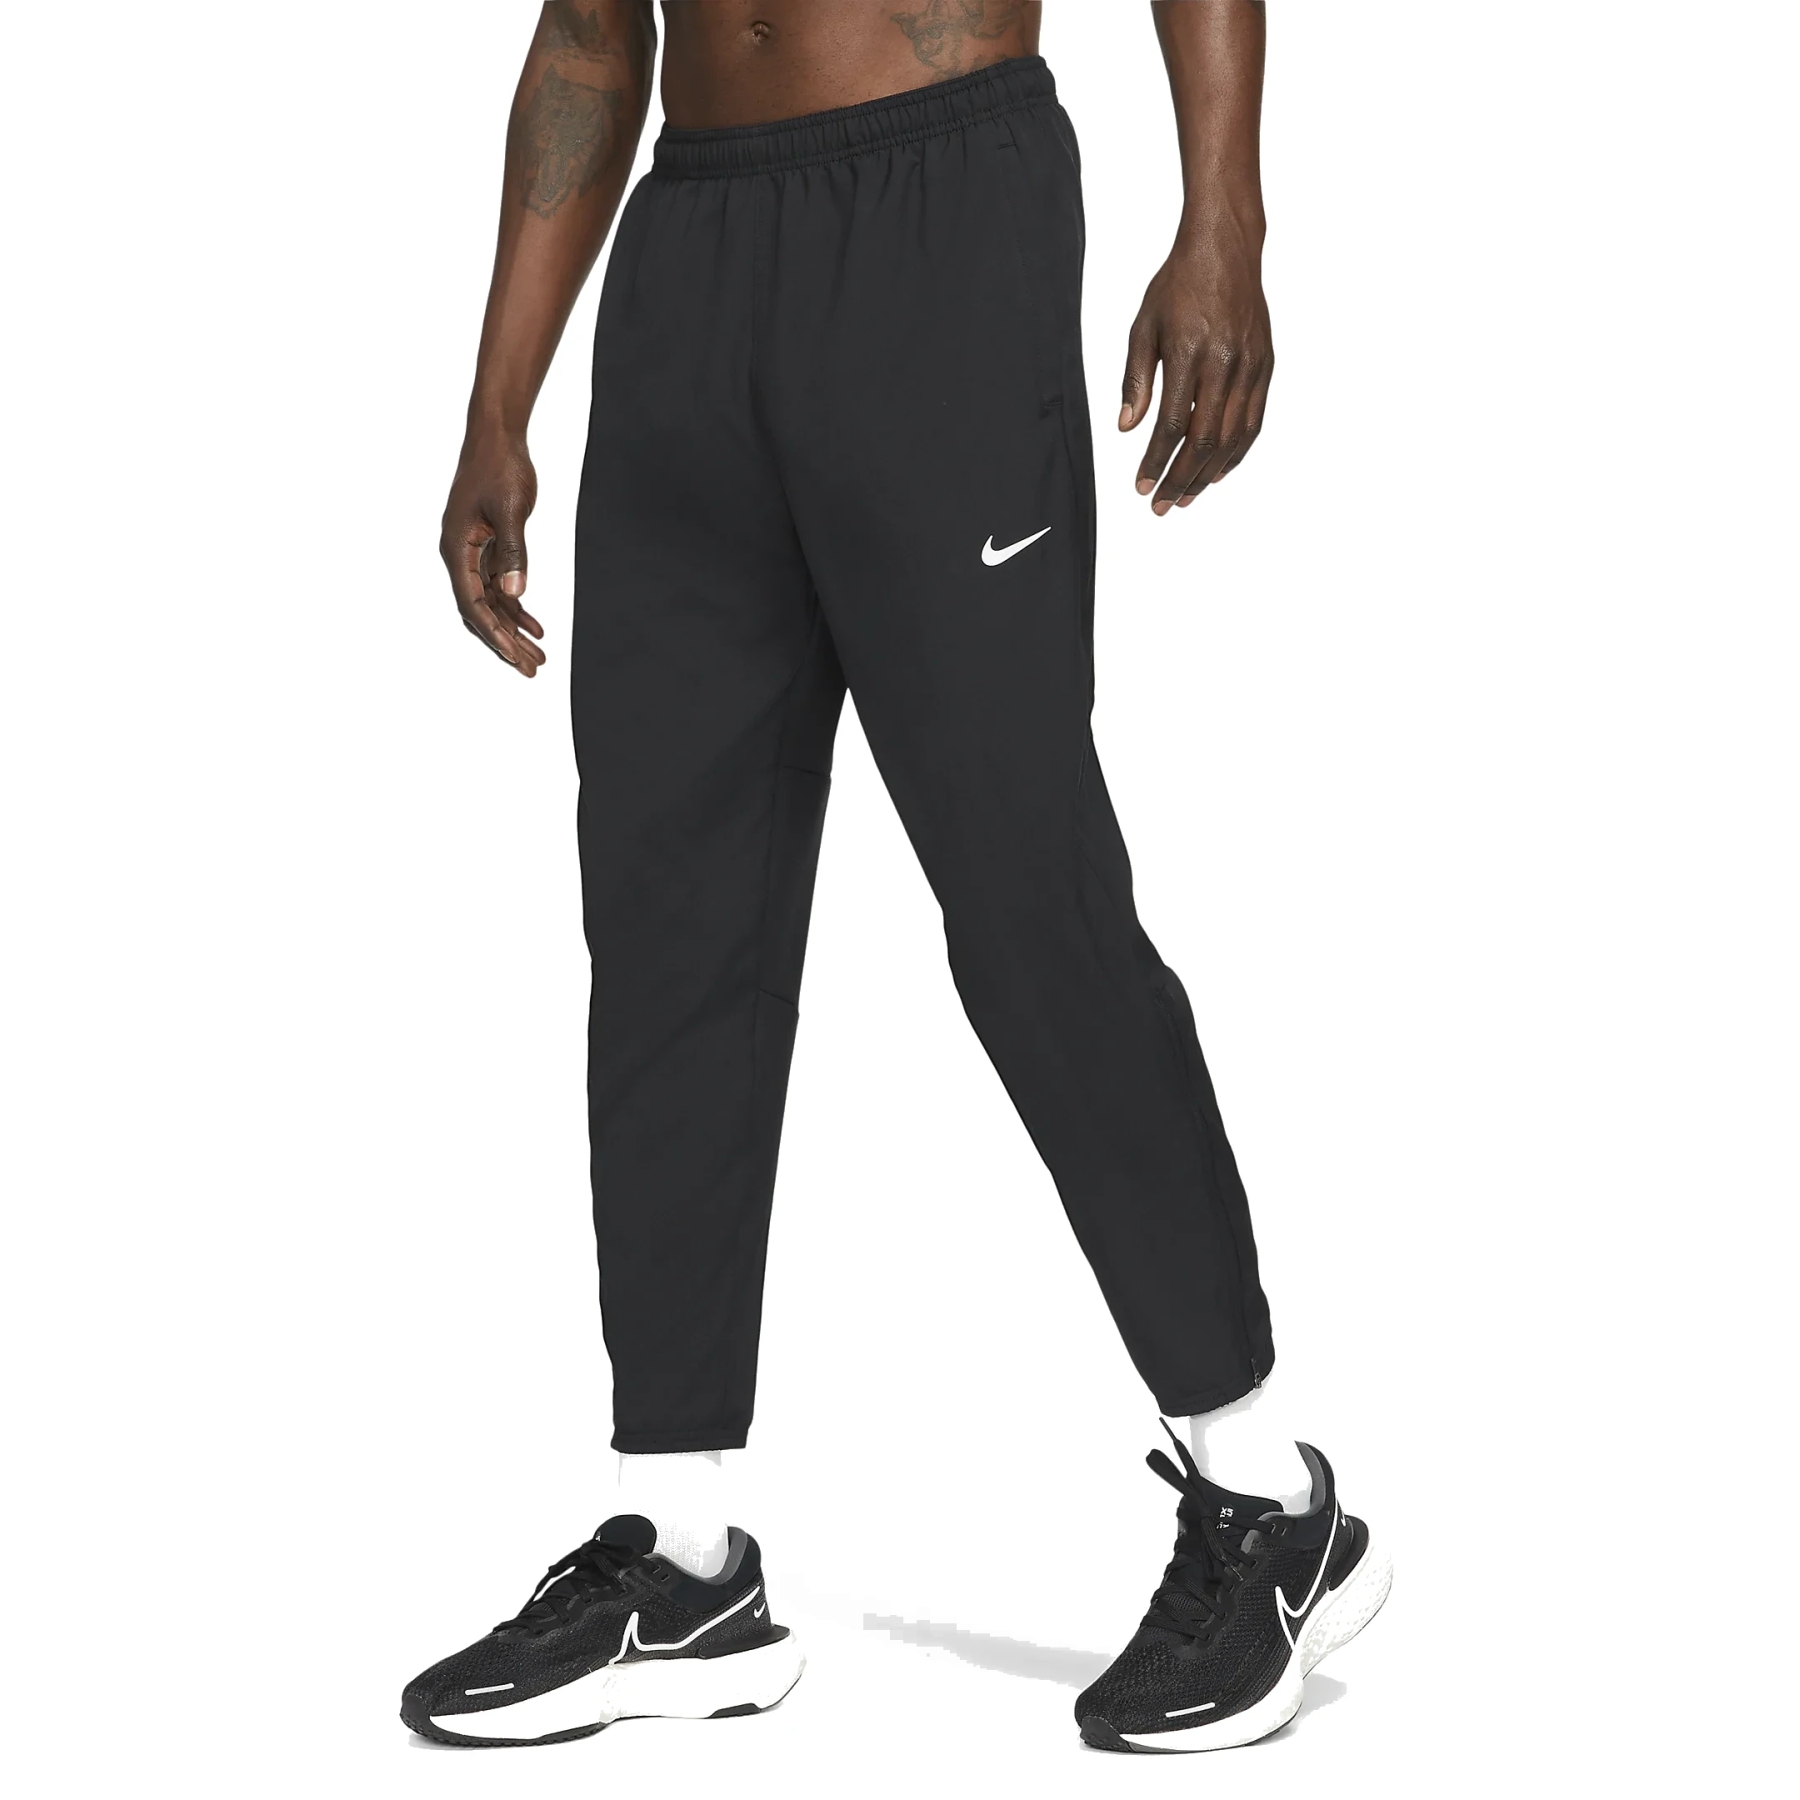 Immagine prodotto da Nike Pantaloni da Corsa Uomo - Dri-FIT Challenger - black/reflective silver DD4894-010